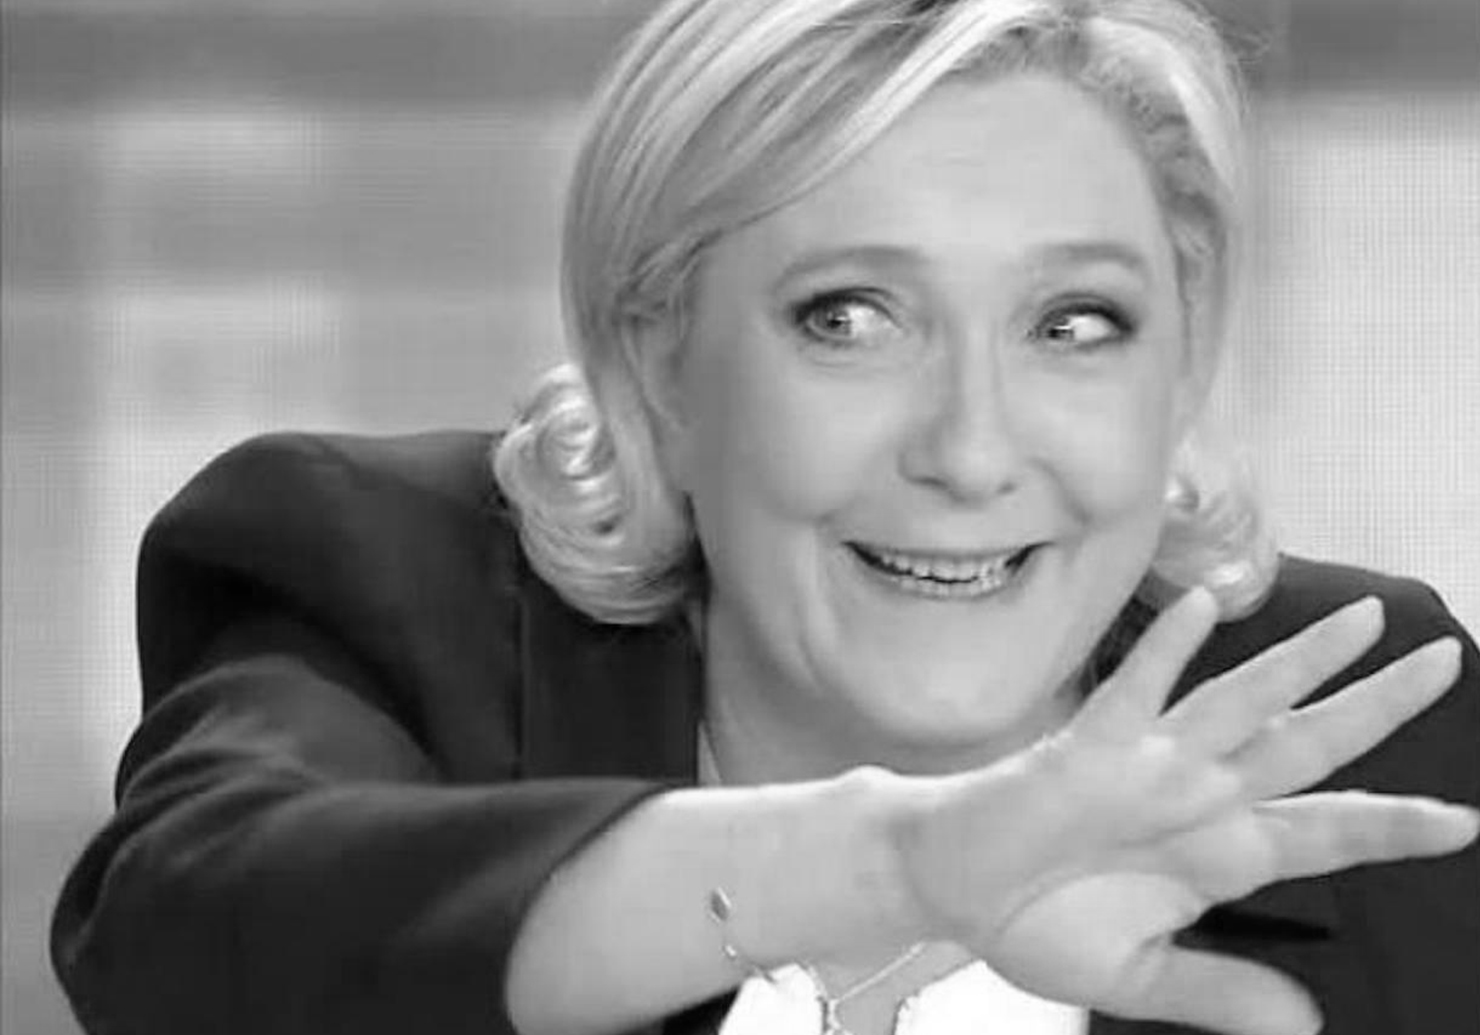 Marine Le Pen, la candidate d'extrême droite, gesticule dans tous les sens lors du débat du second tour de la Présidentielle 2017.